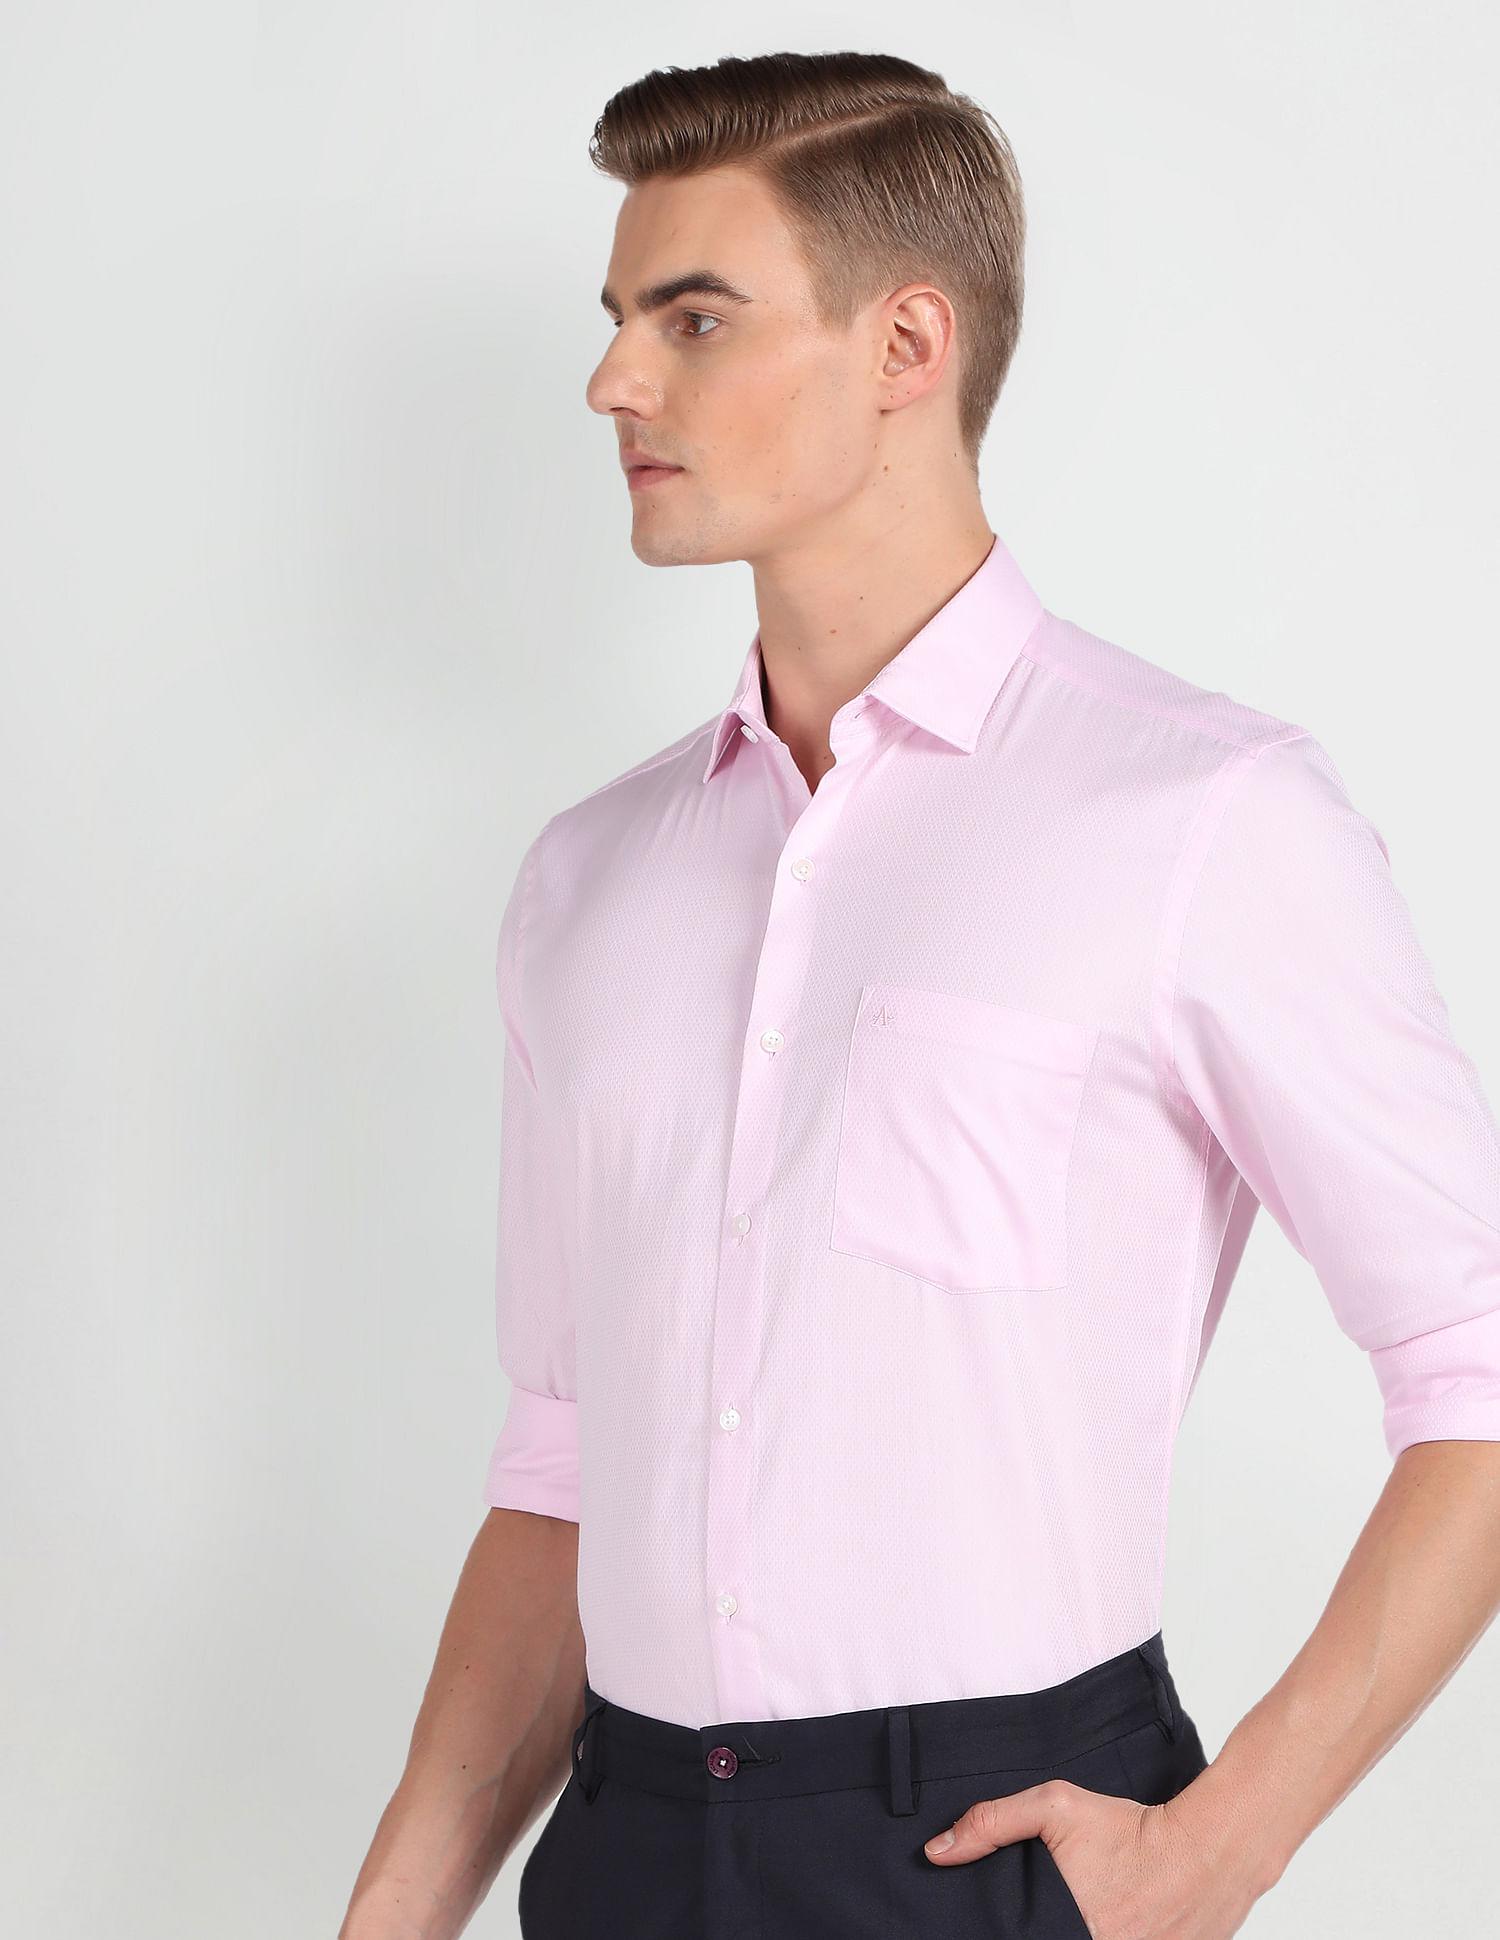 Cutaway Collar Long Sleeve Shirt